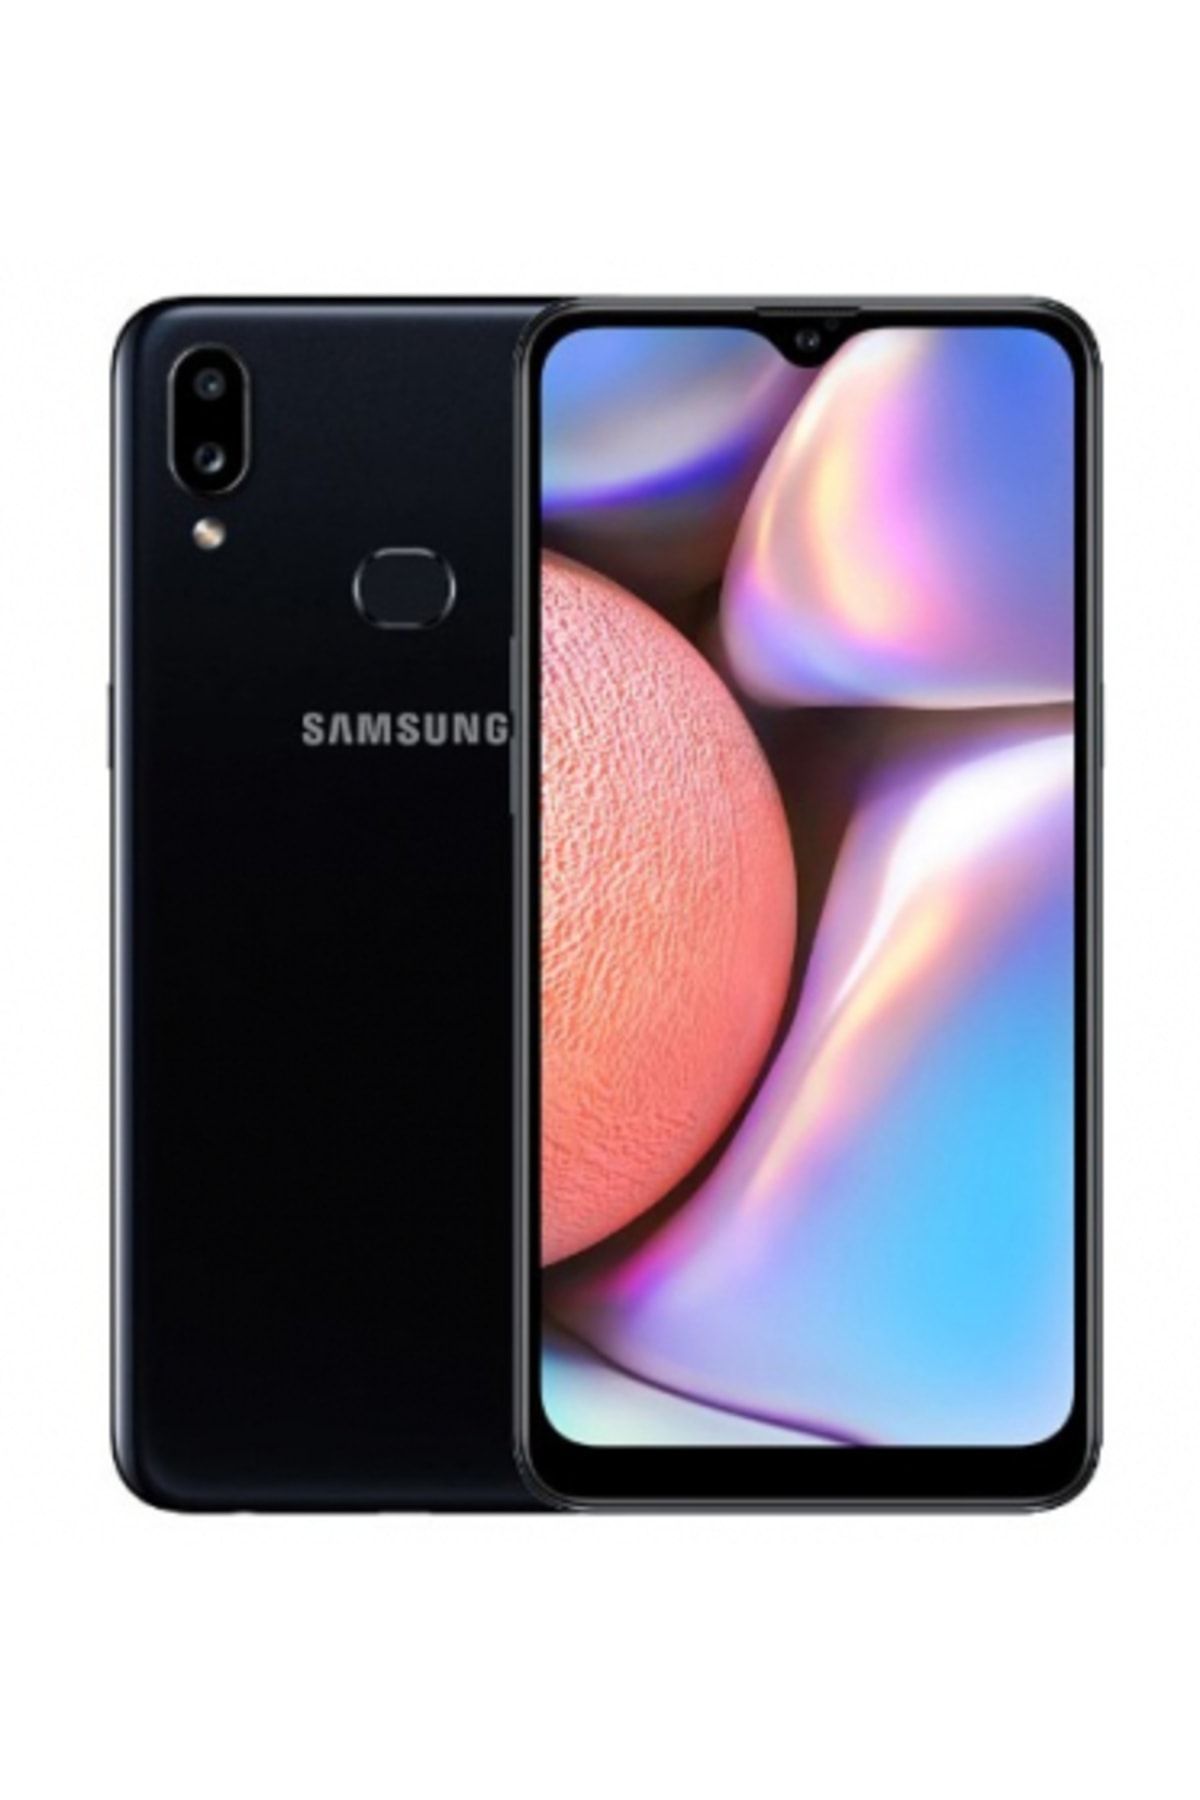 Samsung Yenilenmiş Galaxy A10s Black 32 GB 12 Ay Garantili